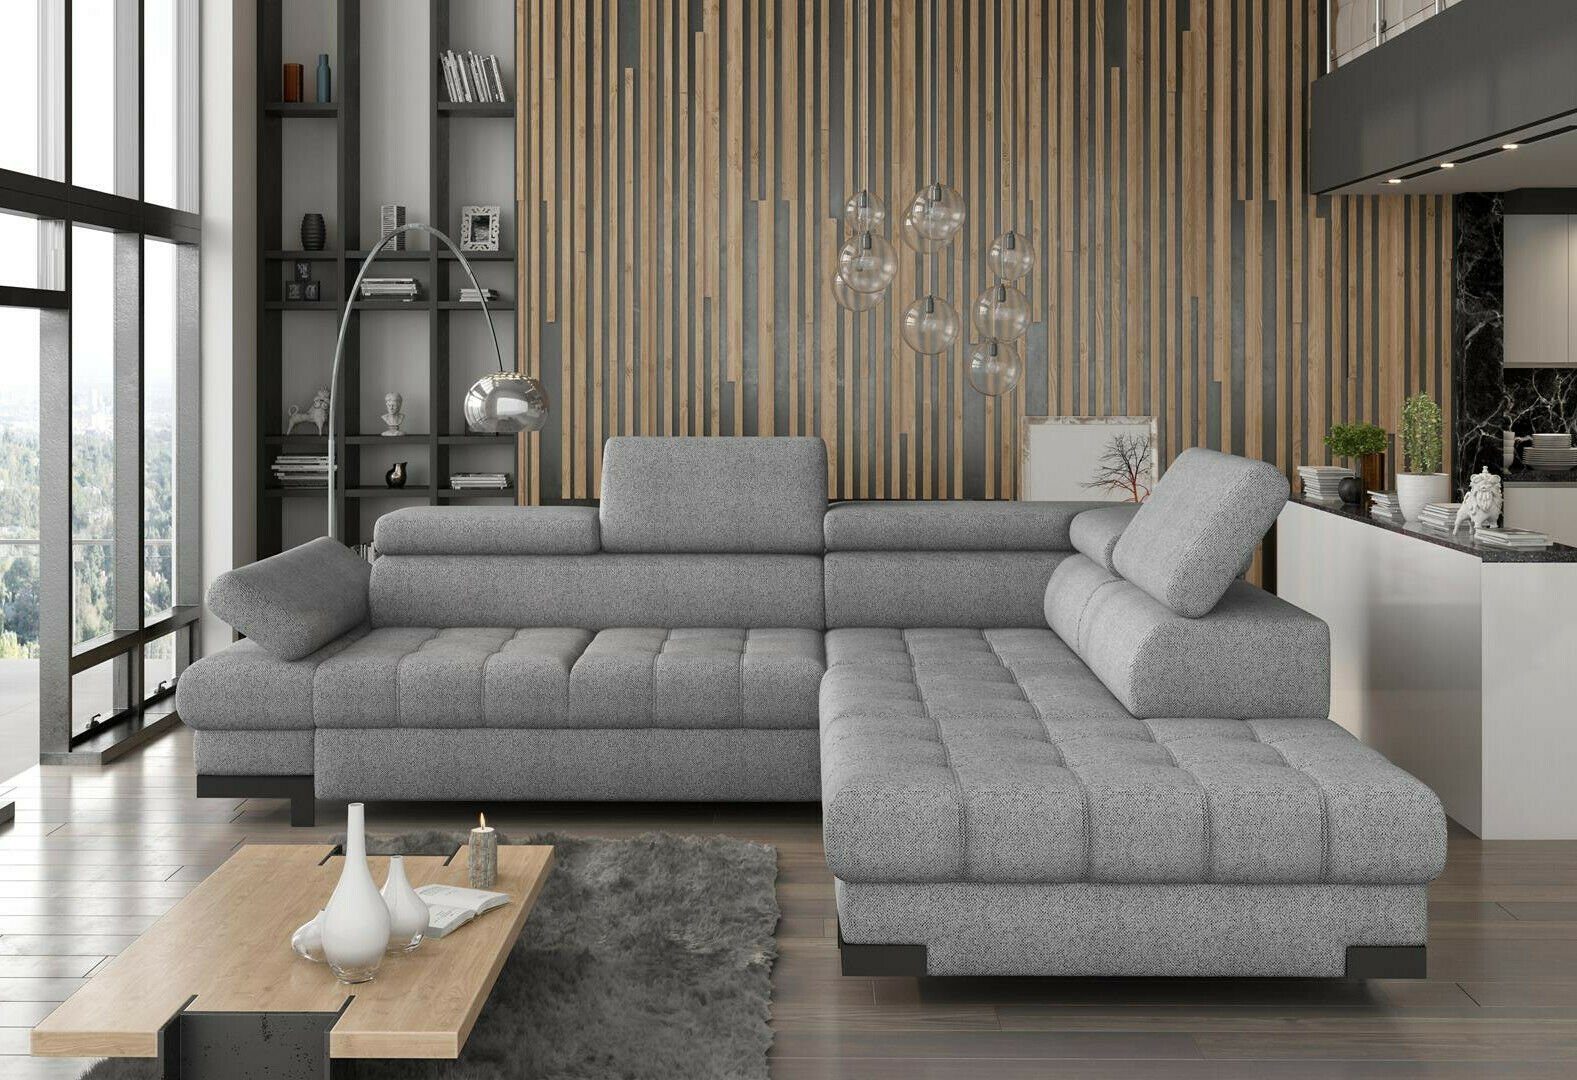 JVmoebel Ecksofa, Design Ecksofa L-form Modern Sofas Textilsofa Couch Wohnlandschaft Grau